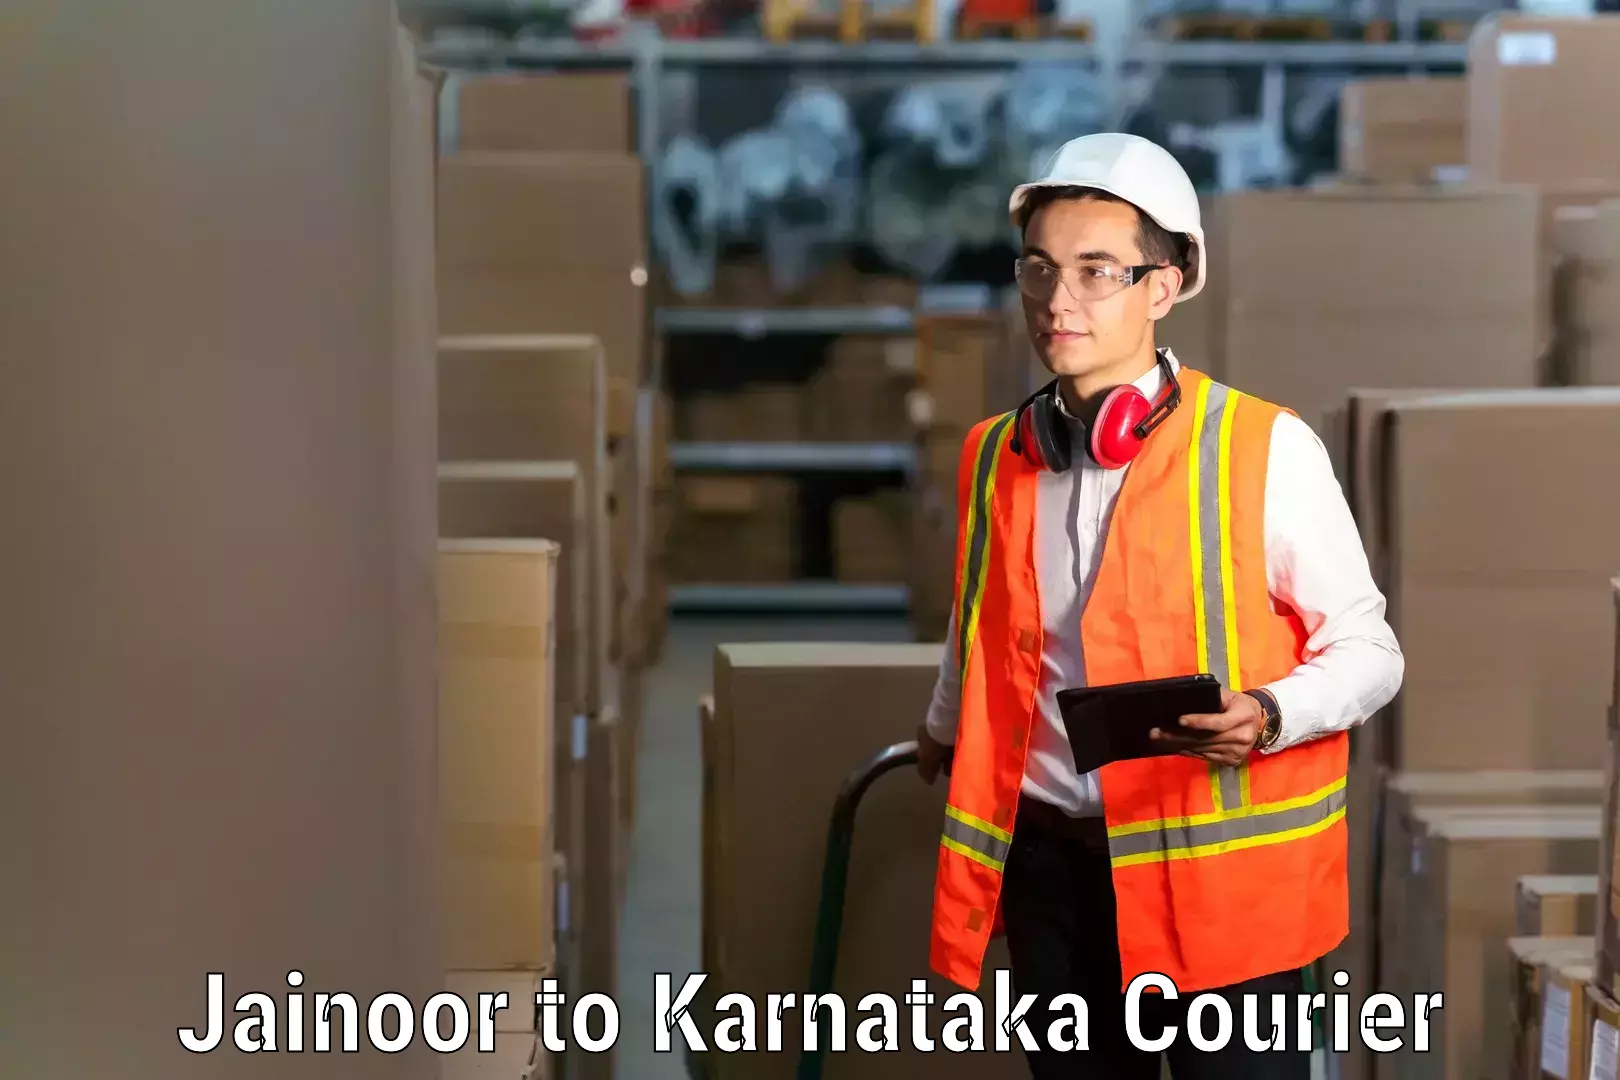 Furniture transport company Jainoor to Karnataka